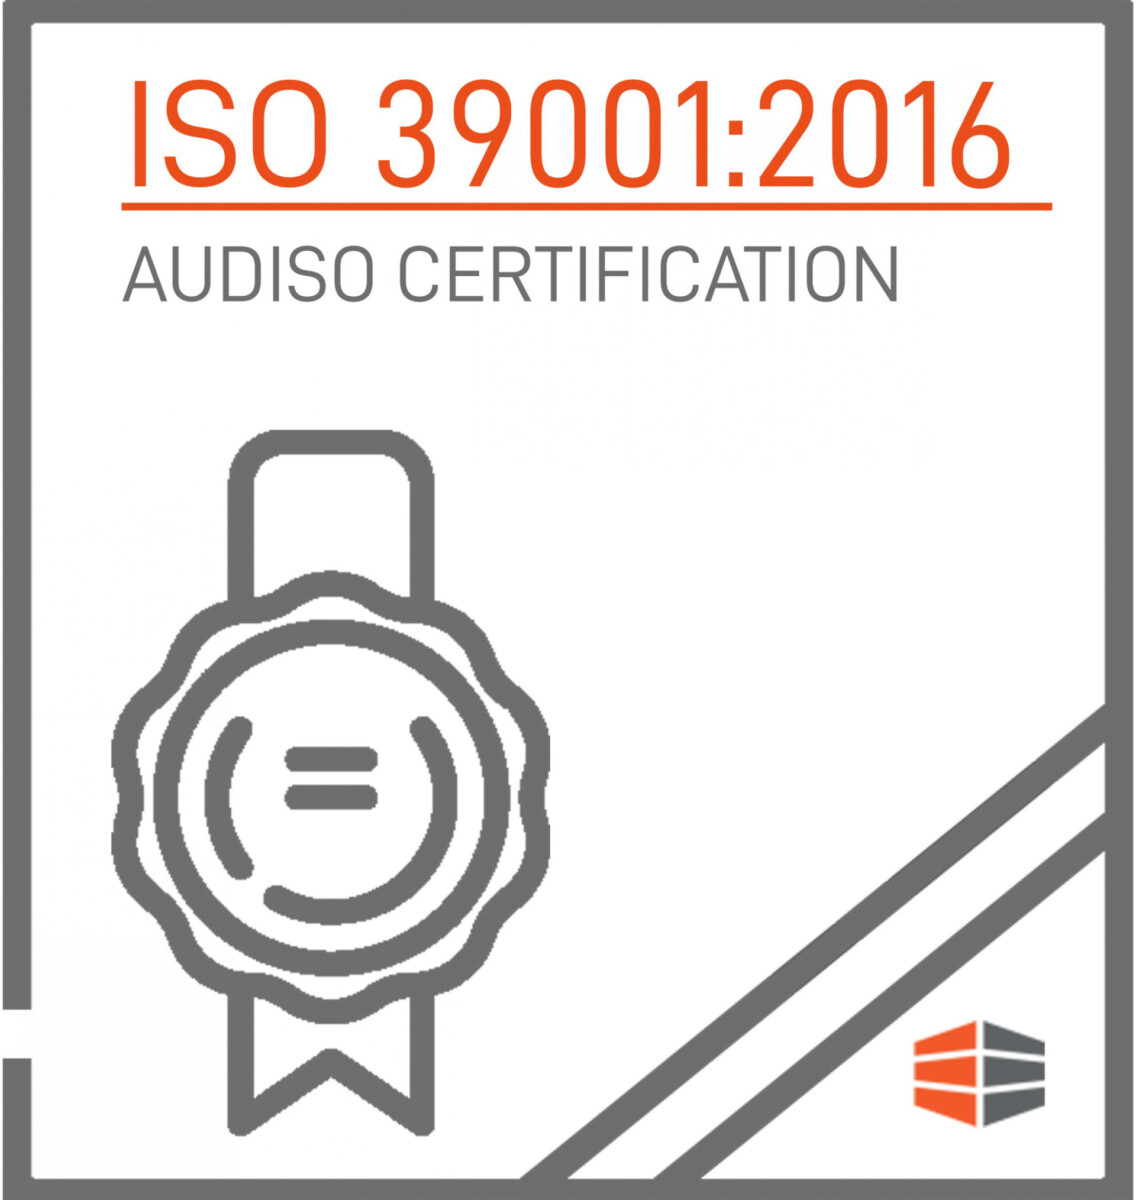 Certificazione  ISO 39001:2016 Rilasciata da AUDISO CERTIFICATION